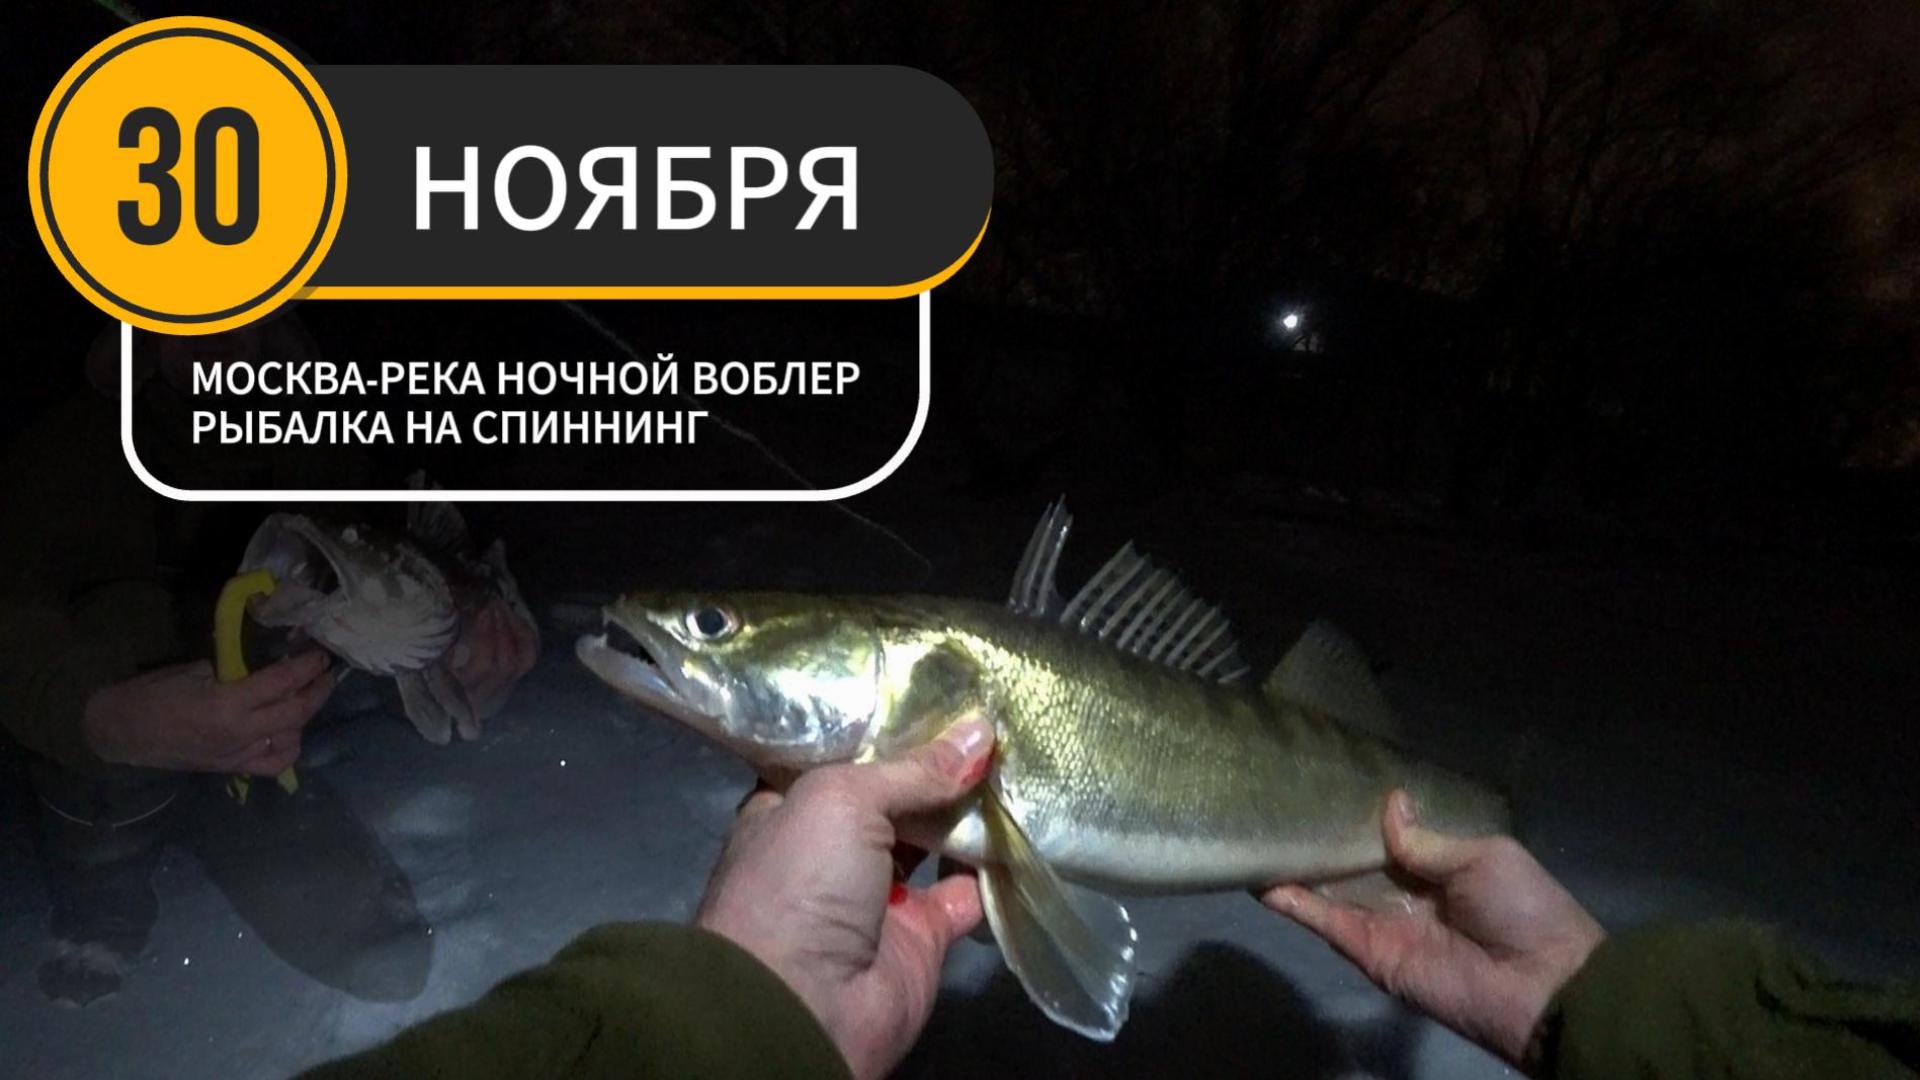 На рыбалке СУДАК КЛЮЁТ В ЧАС ВОЛКА! Москва-река ❄Зимний спиннинг на воблеры